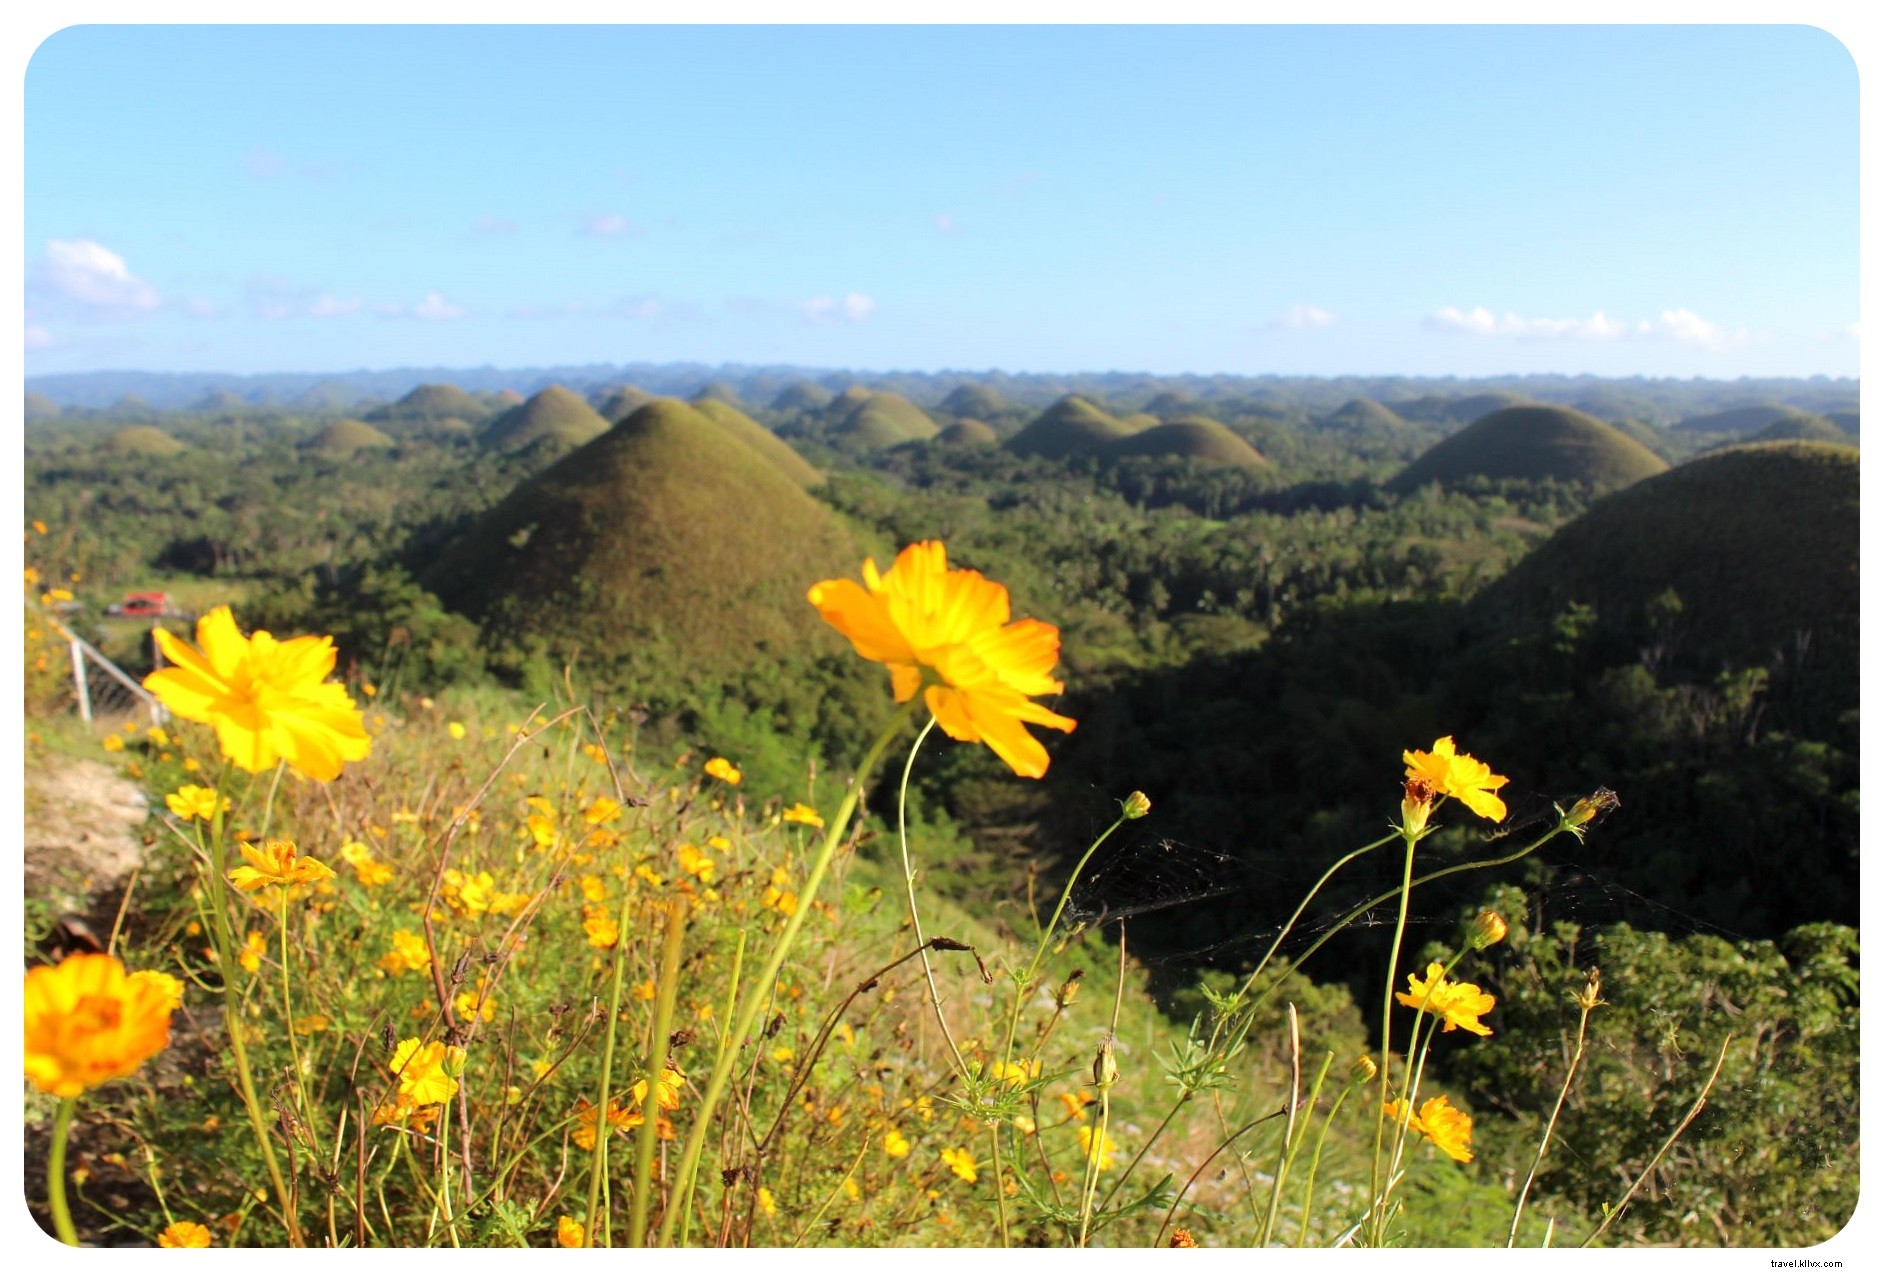 ボホール島のメガネザルとチョコレートの丘|フィリピン